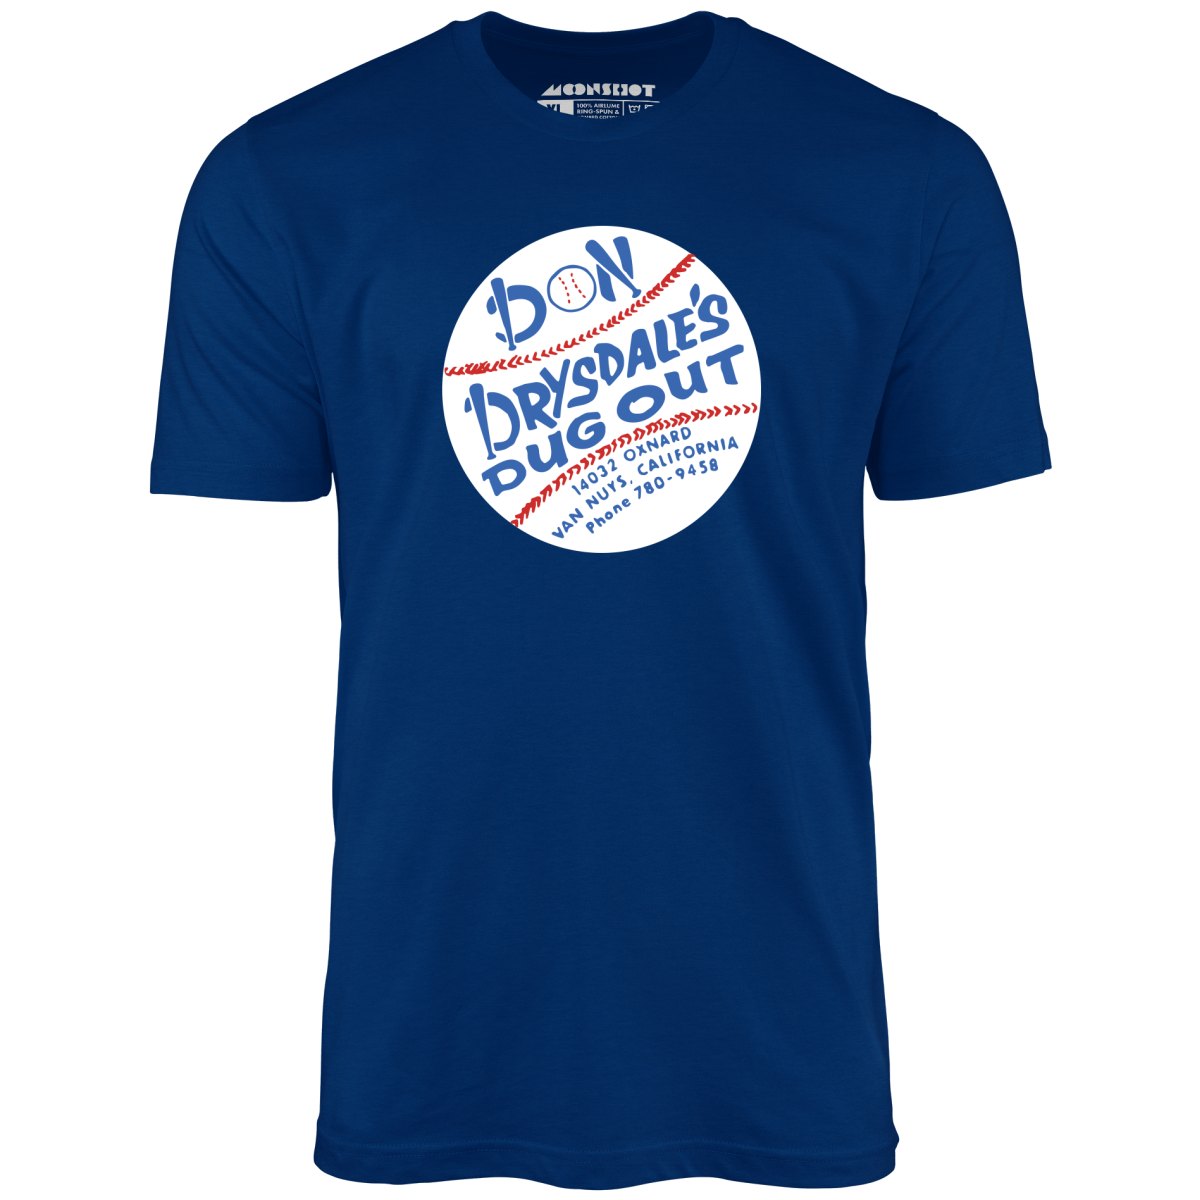 Don Drysdale's Dugout - Van Nuys, CA - Vintage Restaurant - Unisex T-Shirt